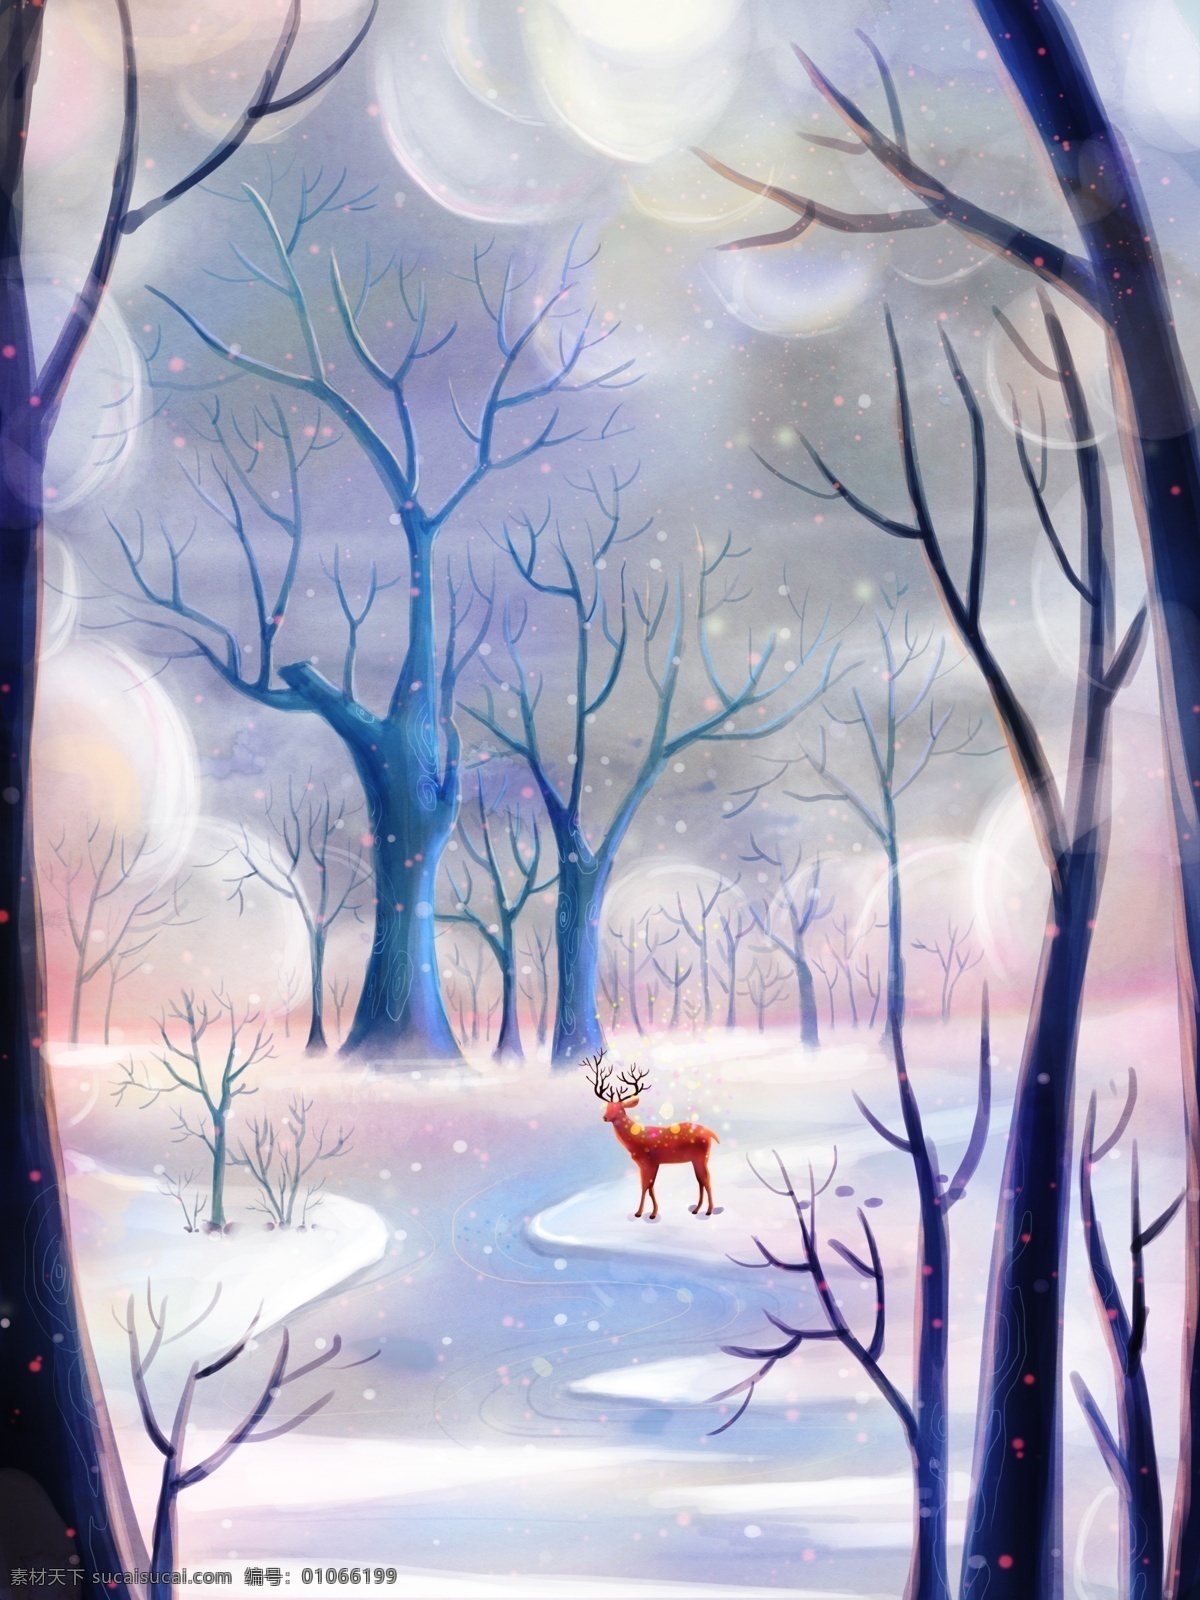 原创 立冬 唯美 插画 森林 里 鹿 雪景 梦幻 壁纸 冬至 下雪 树木